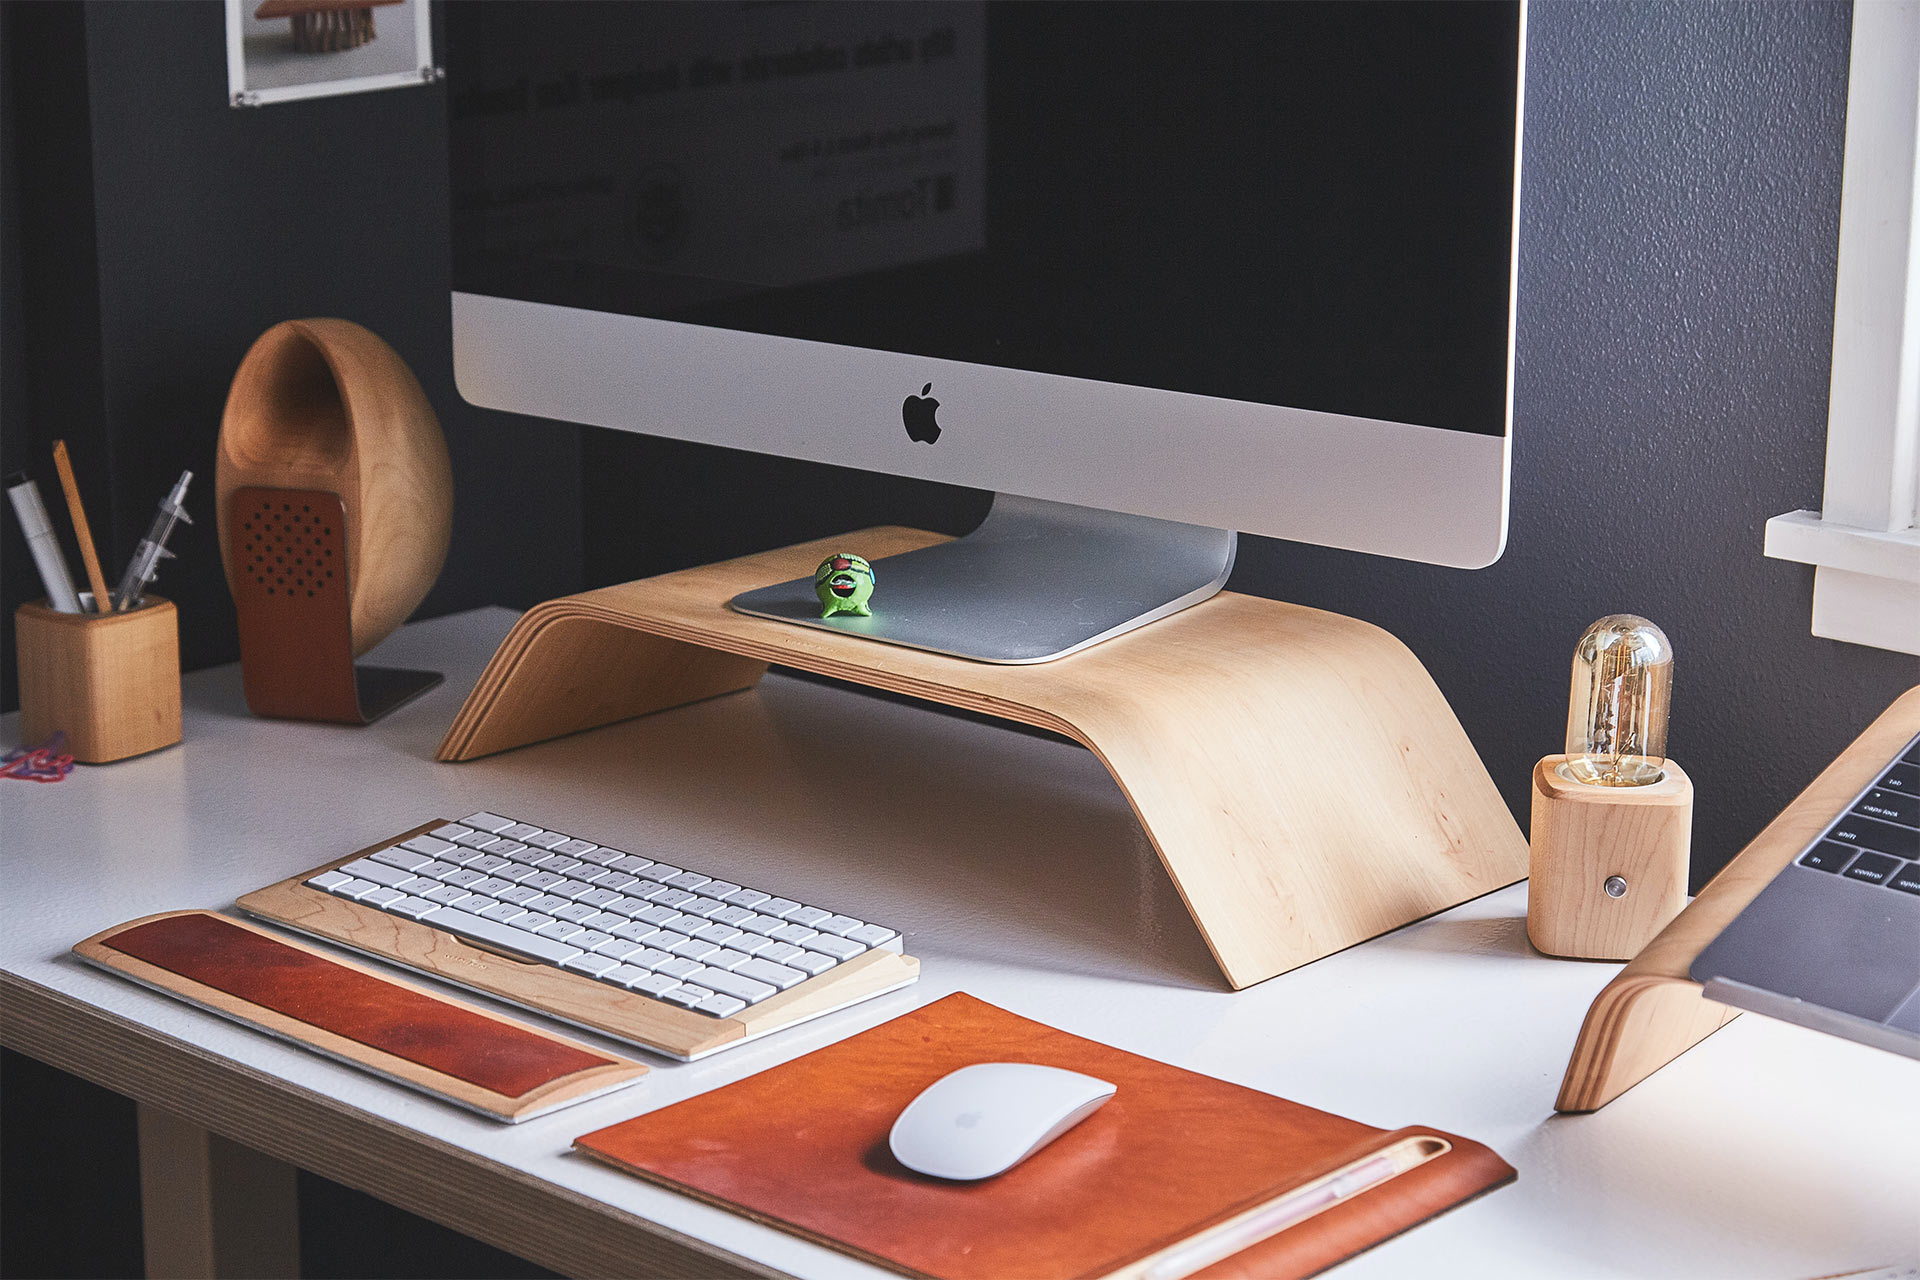 Un iMac sobre un soporte de madera en un escritorio con un teclado y un ratón inalámbricos.